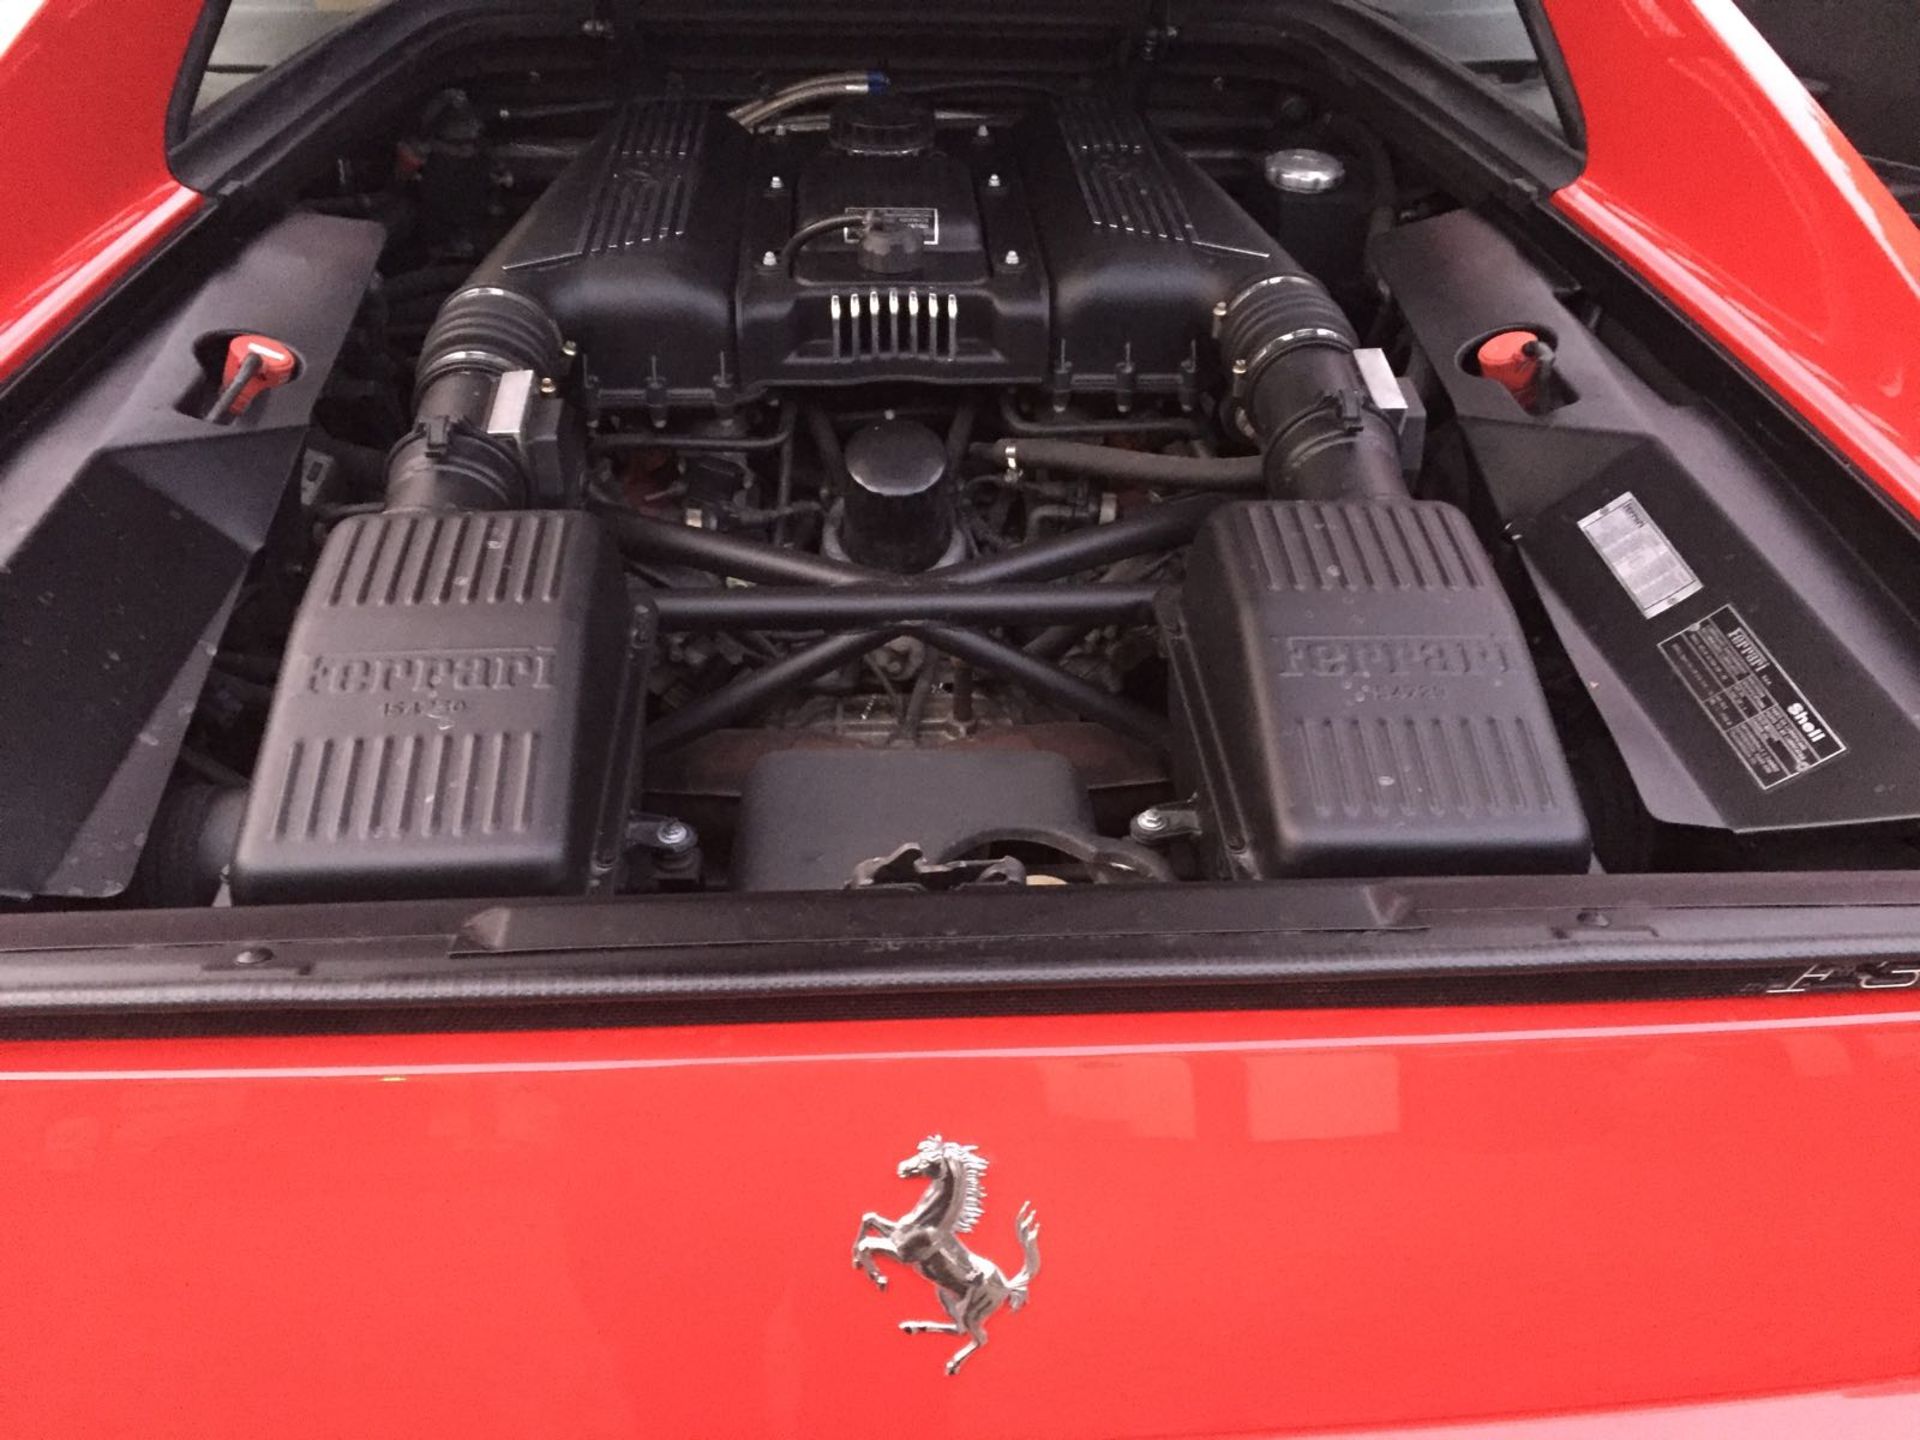 RHD 1996 Ferrari 355 GTS (Rare Manual Targa) - Image 22 of 40